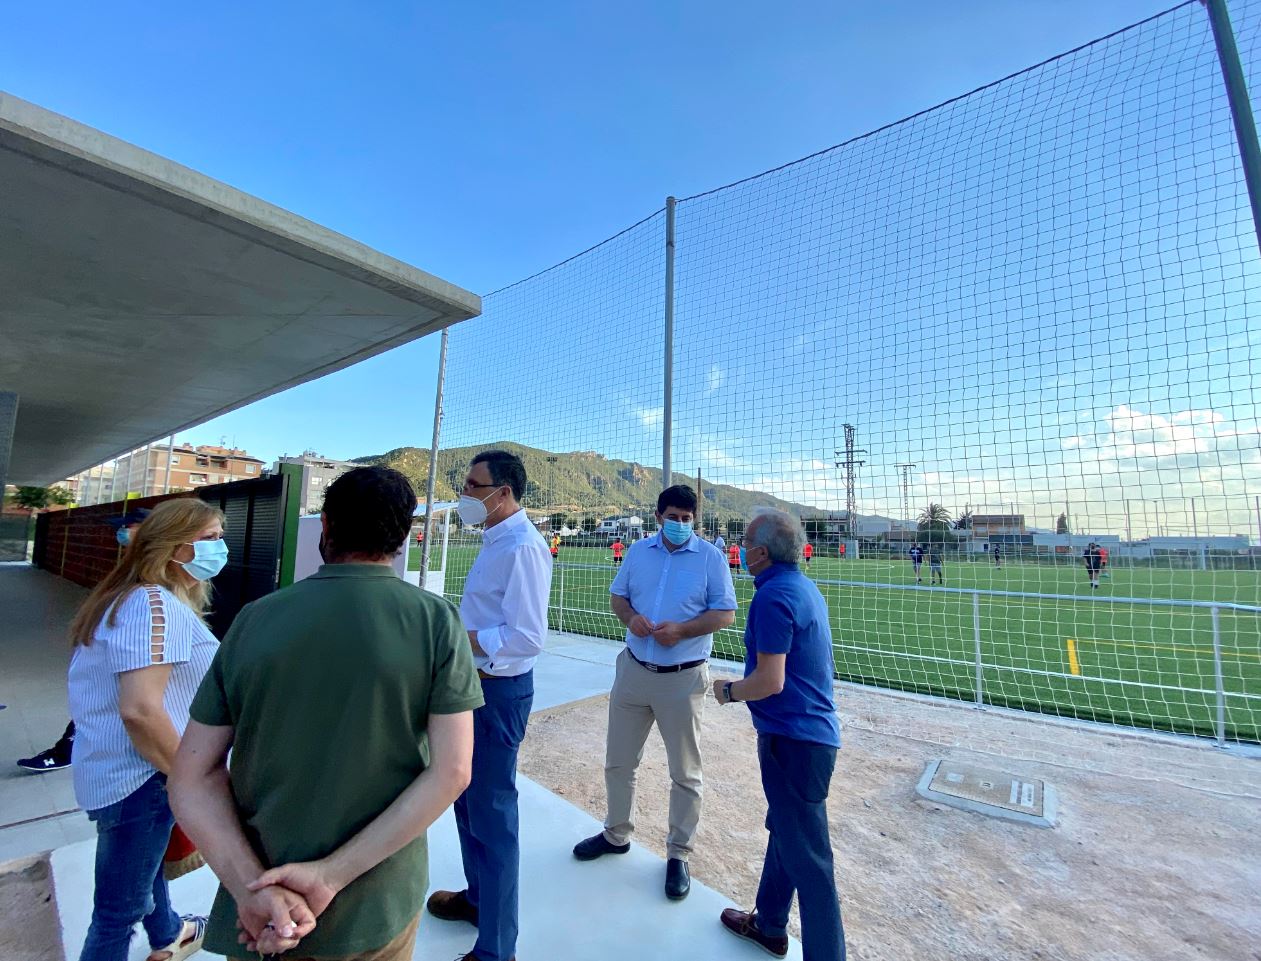 Los estudiantes y deportistas de San José de La Vega ya pueden disfrutar de la sala de estudios 24 horas y el nuevo campo de fútbol de la pedanía